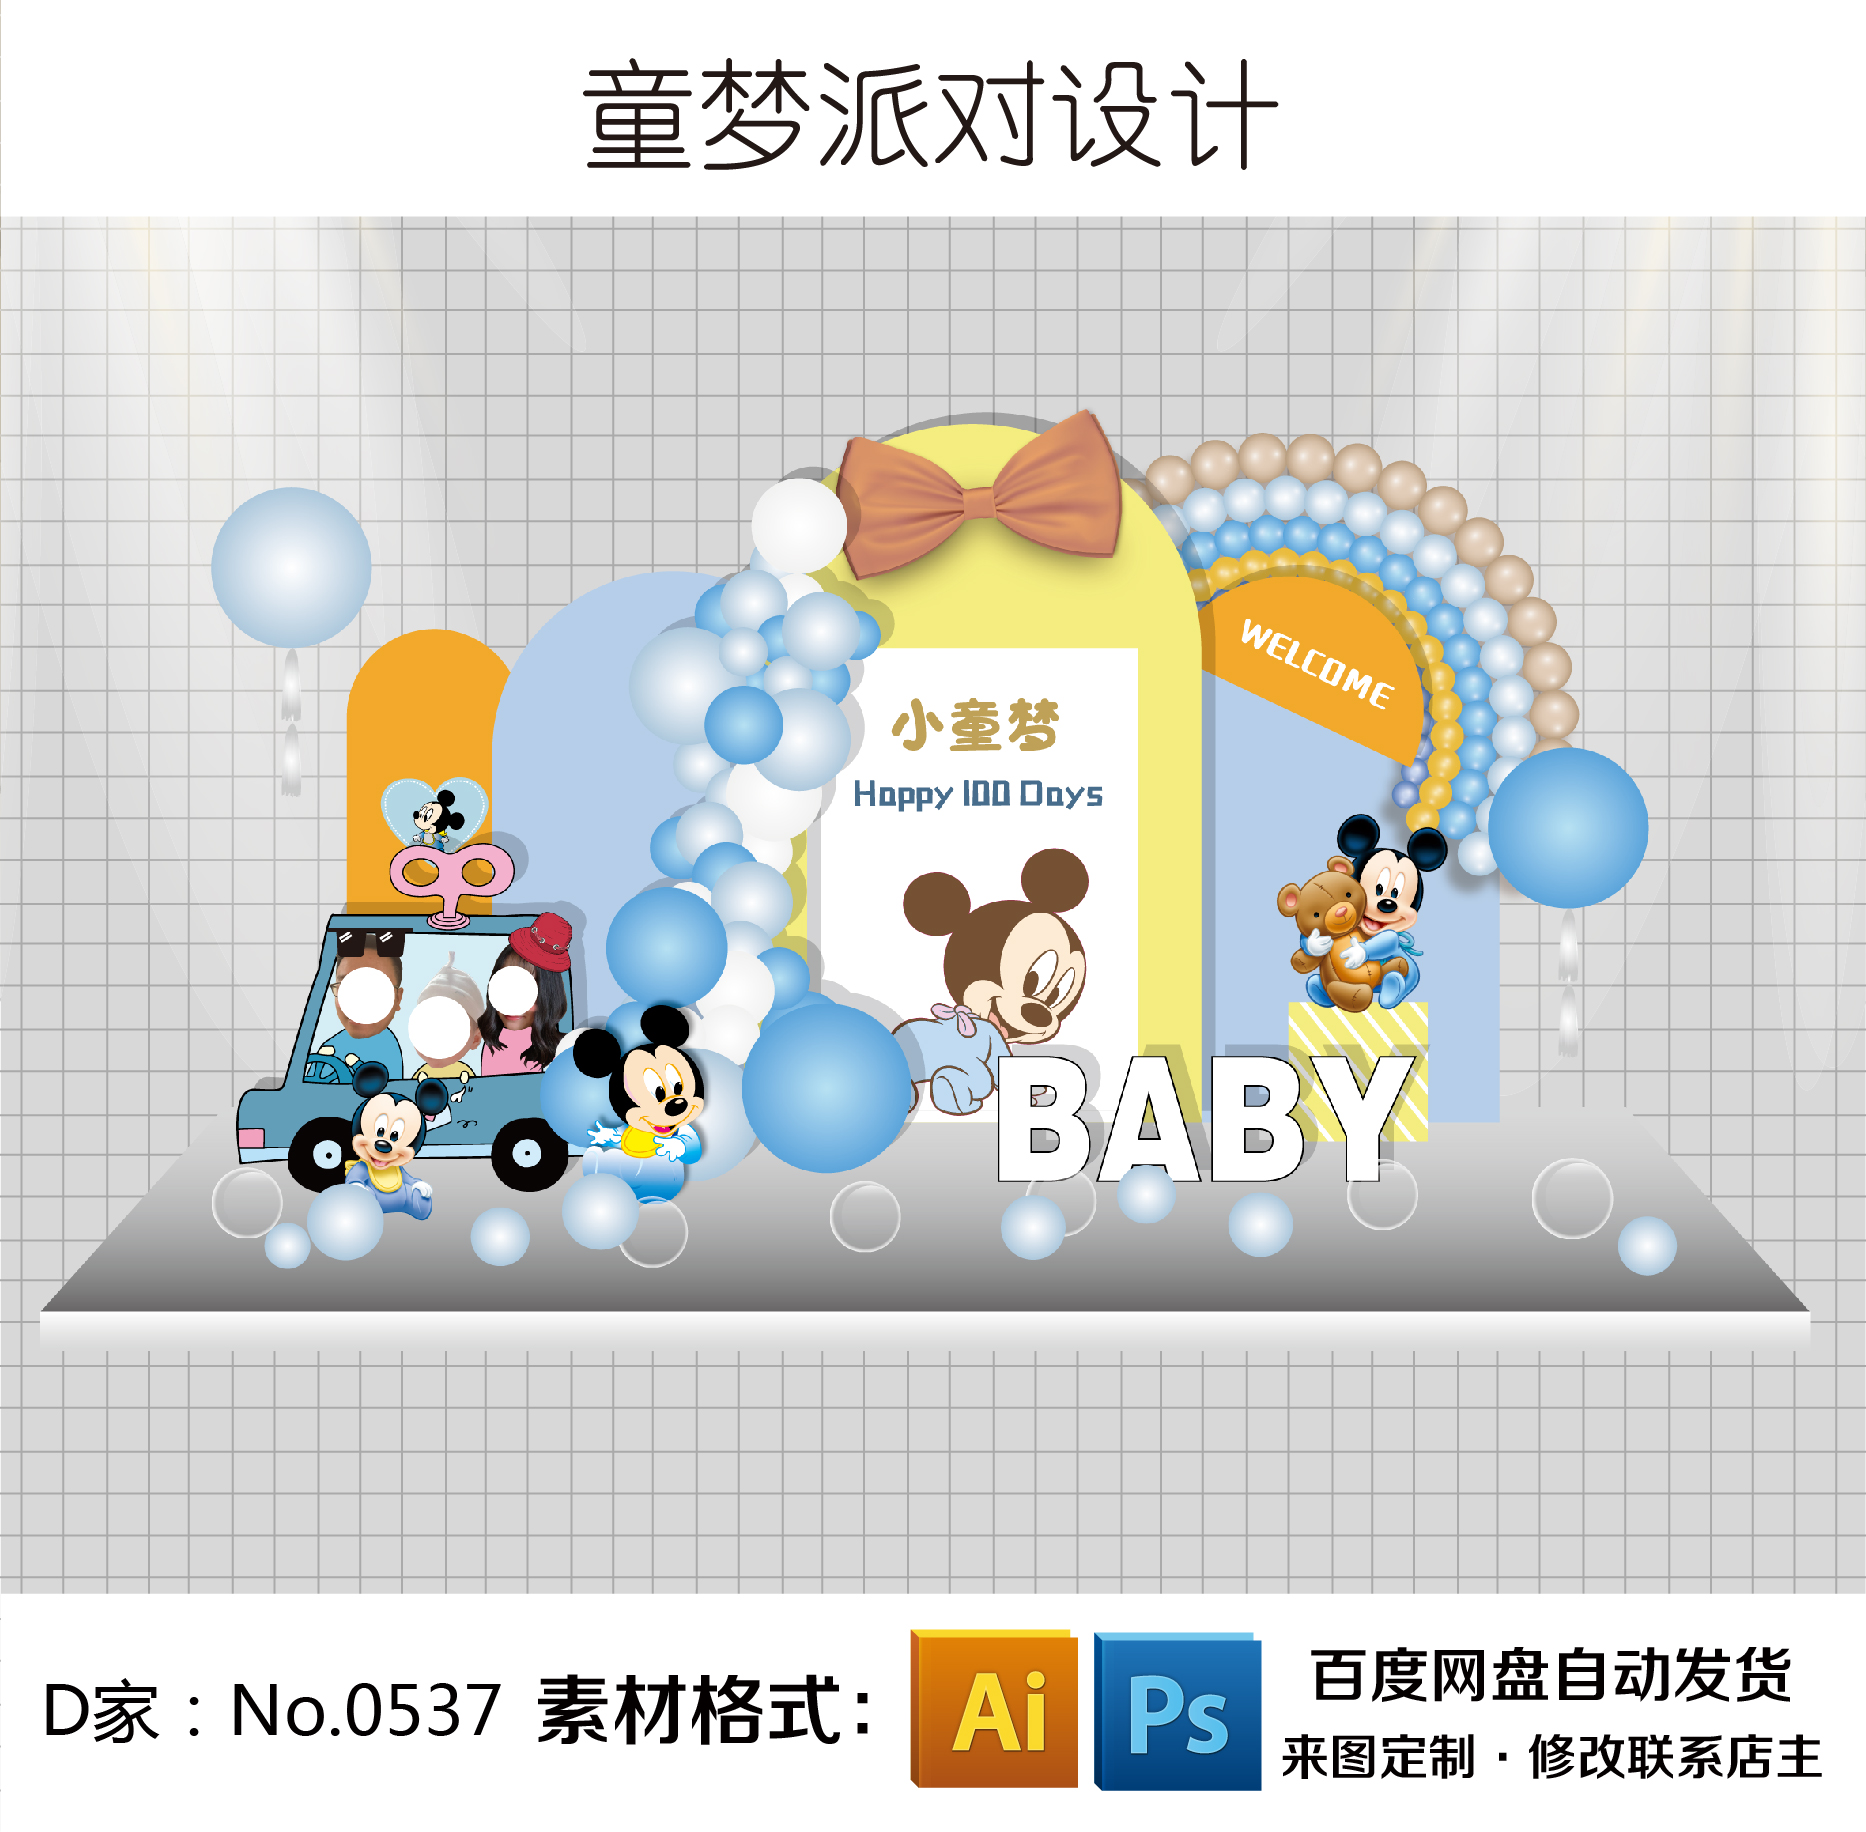 黄蓝色米奇小车大头贴Q版头像主题男宝宝生日百天宴派对背景设计